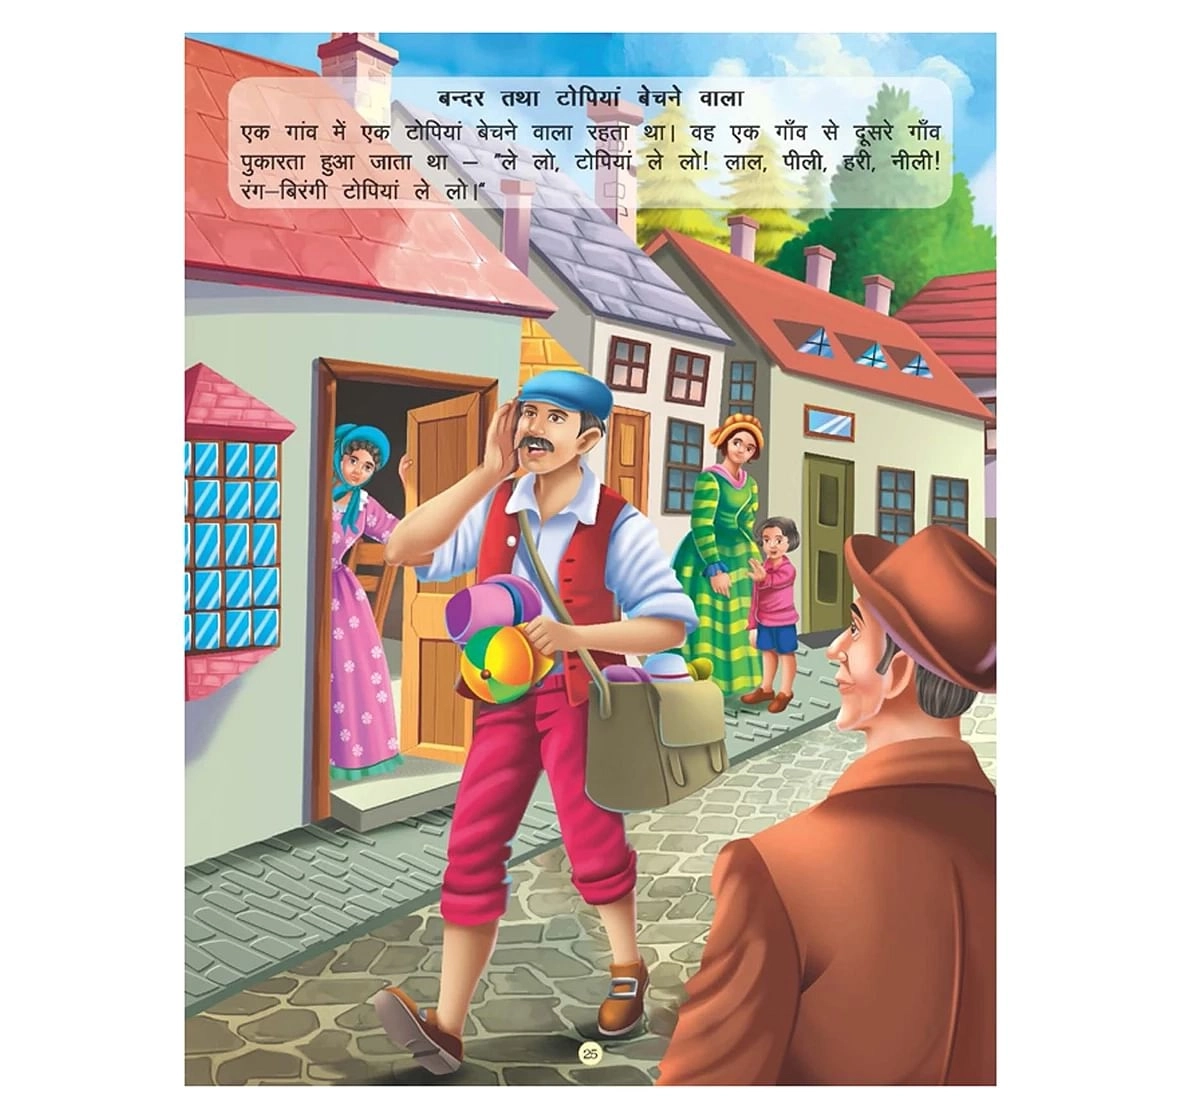 Dreamland Paper Back Hathi Aur Darji Panchtantra Ki Kahaniyan Story Books for kids 4Y+, Multicolour